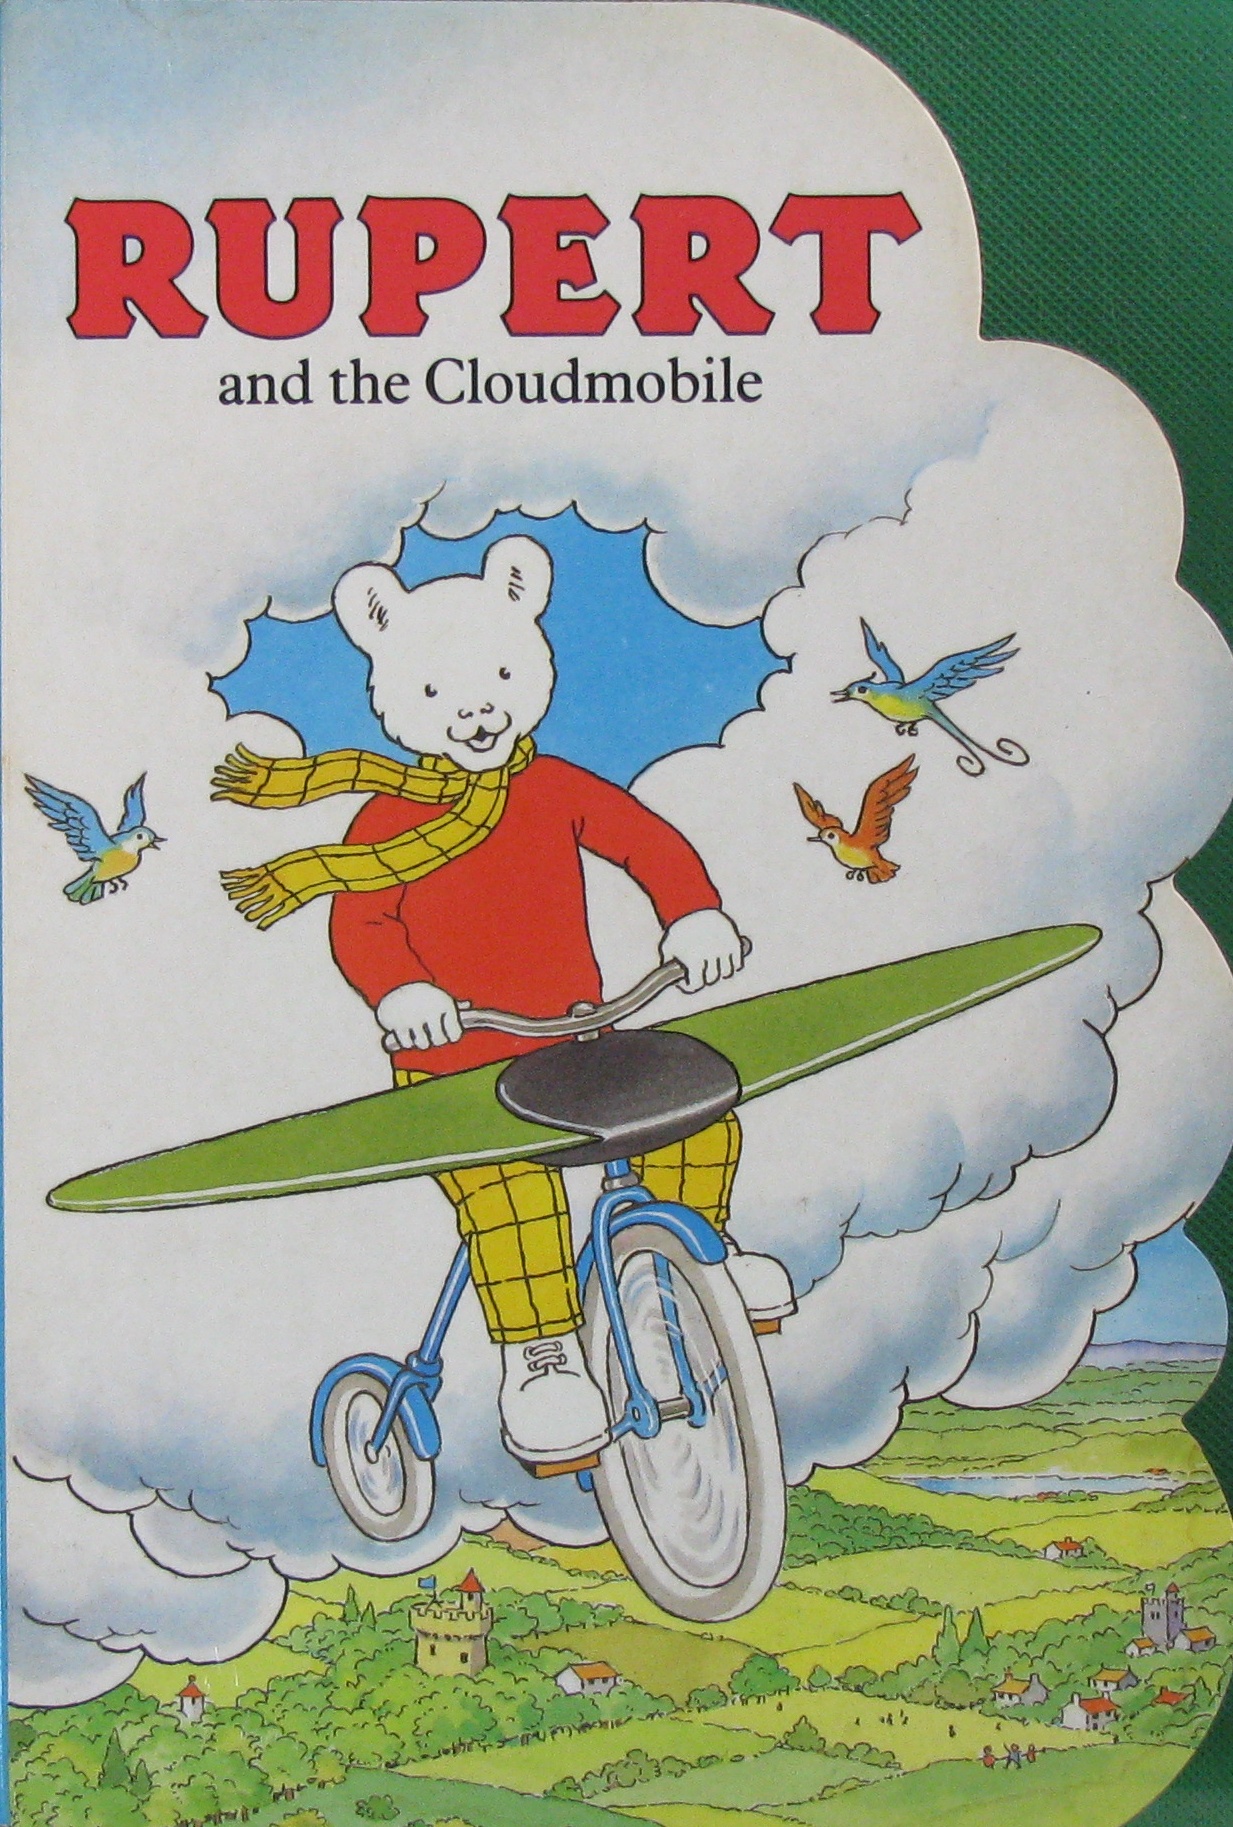 rupert and the cloudmobile (rupert bear board books series)